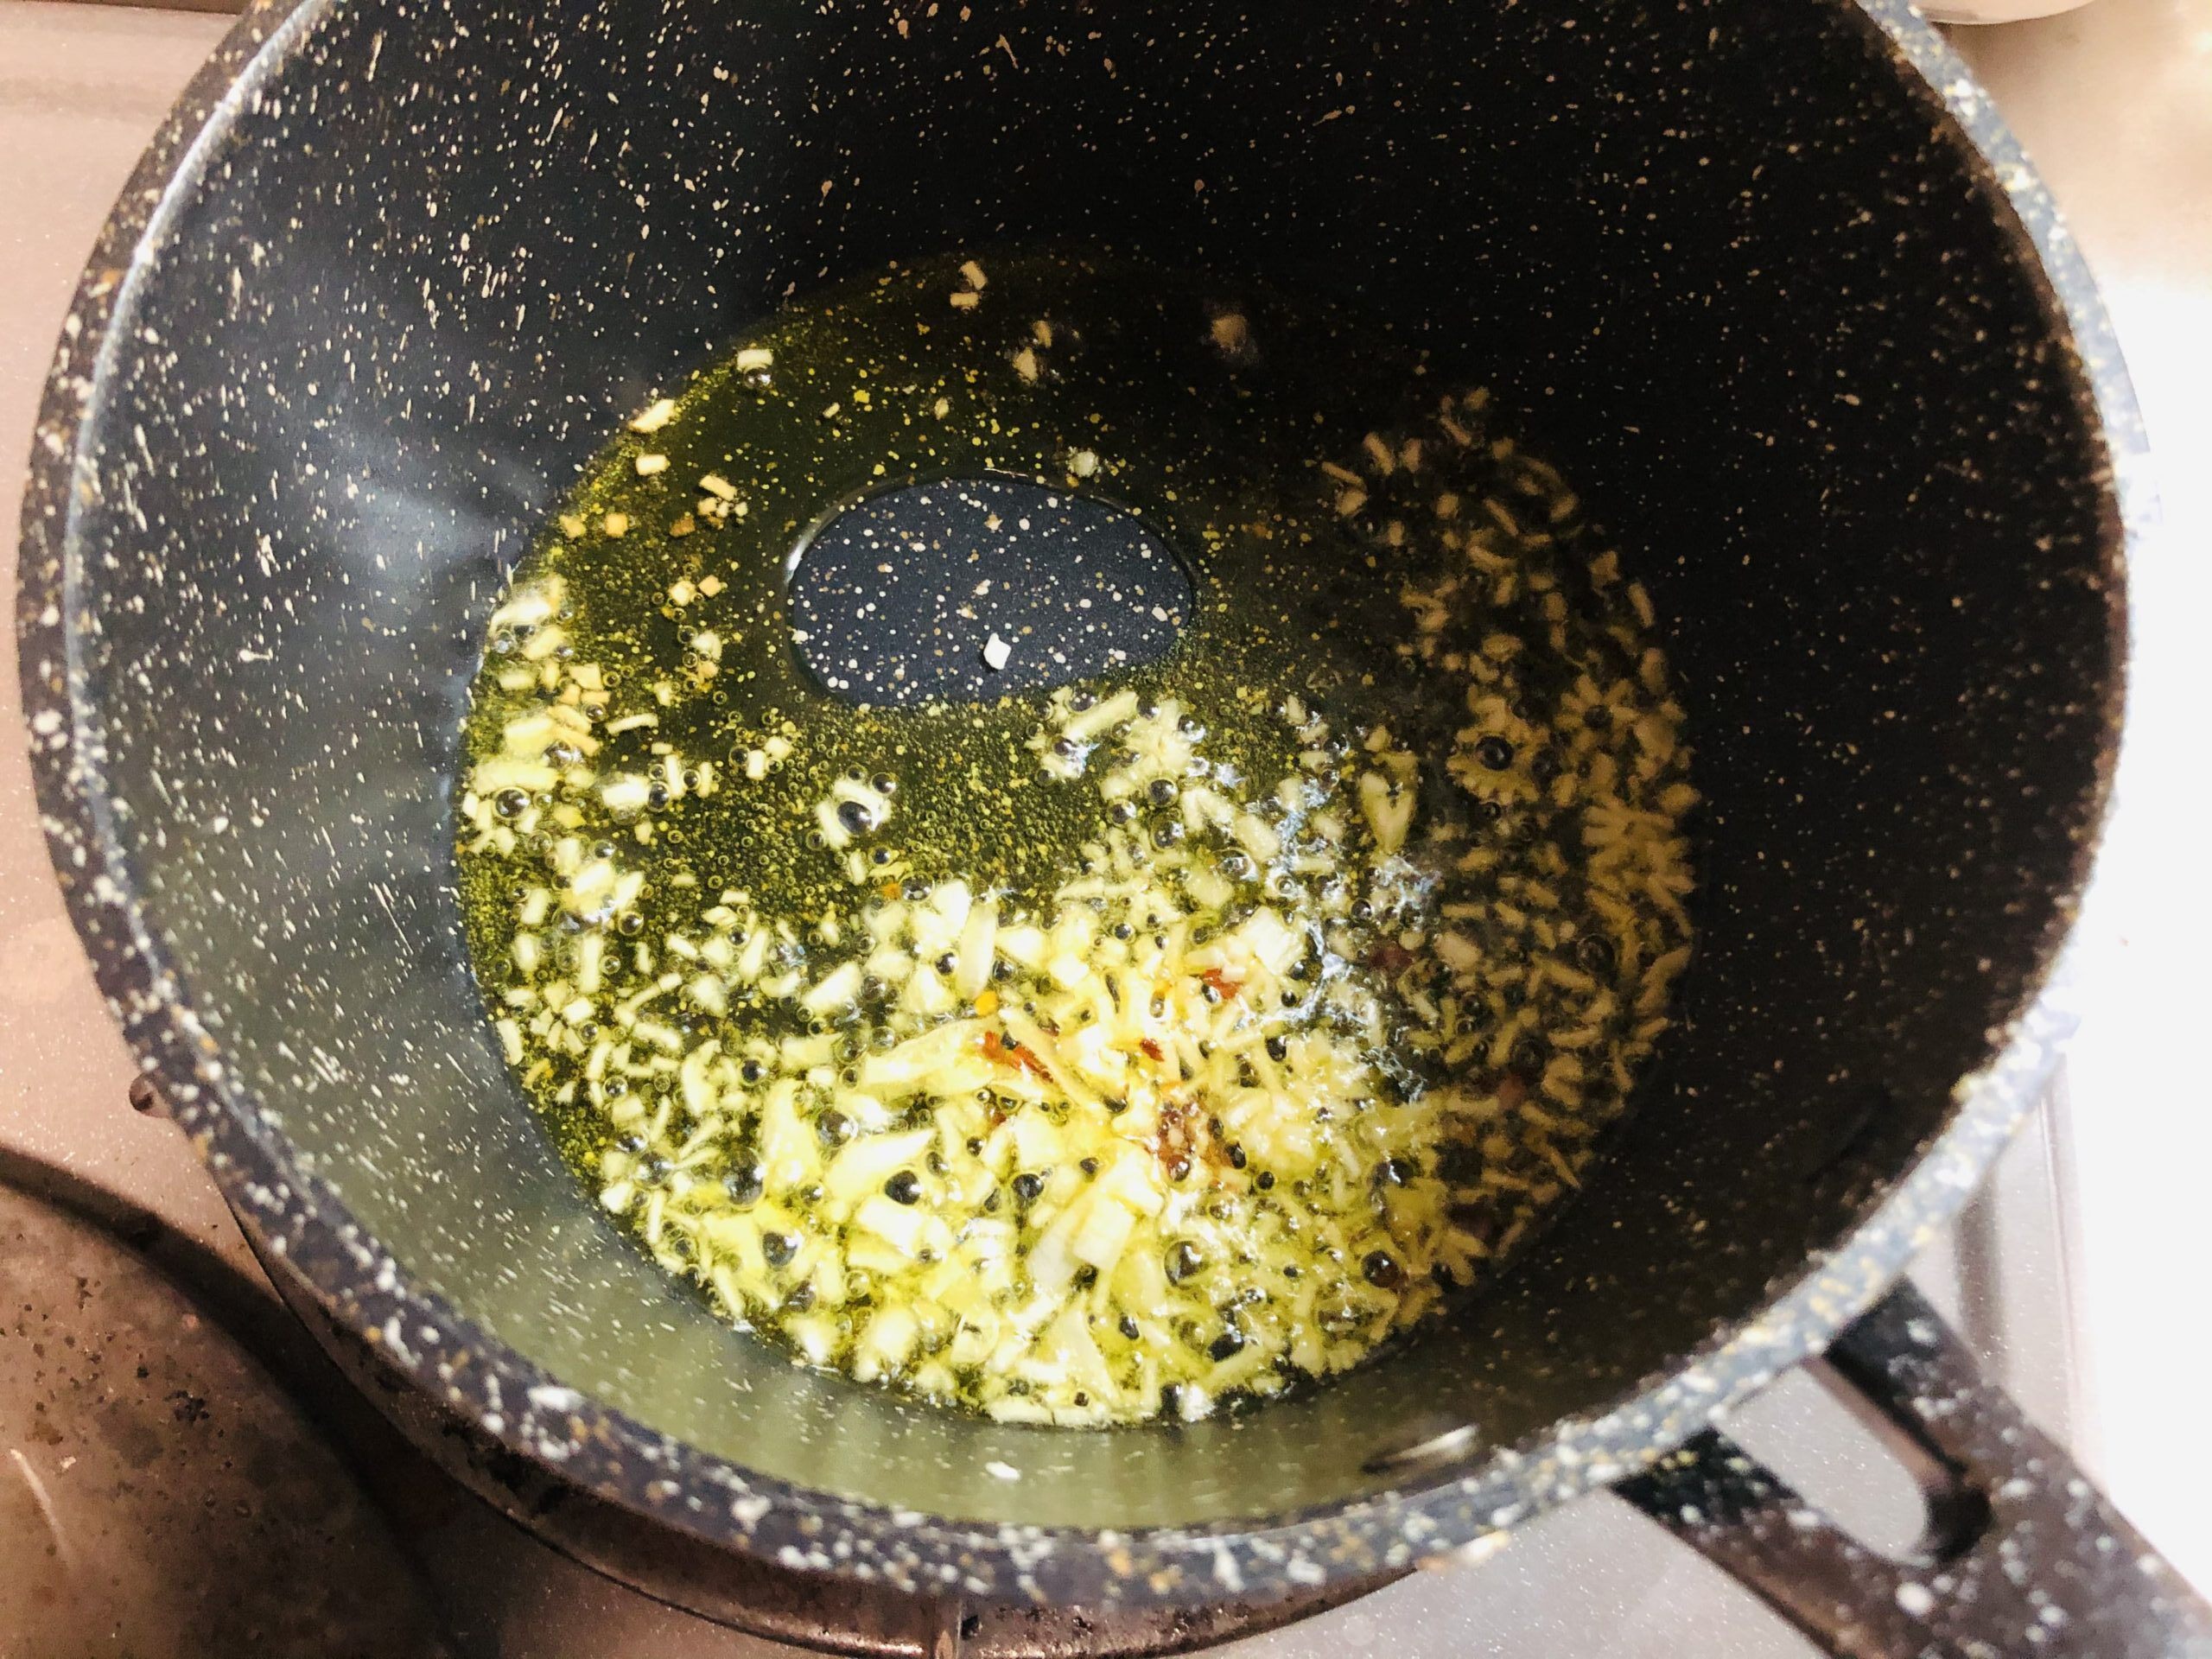 小鍋にオリーブオイルとにんにくみじん切りタカノツメを入れ火にかけて香りを出している様子の画像です